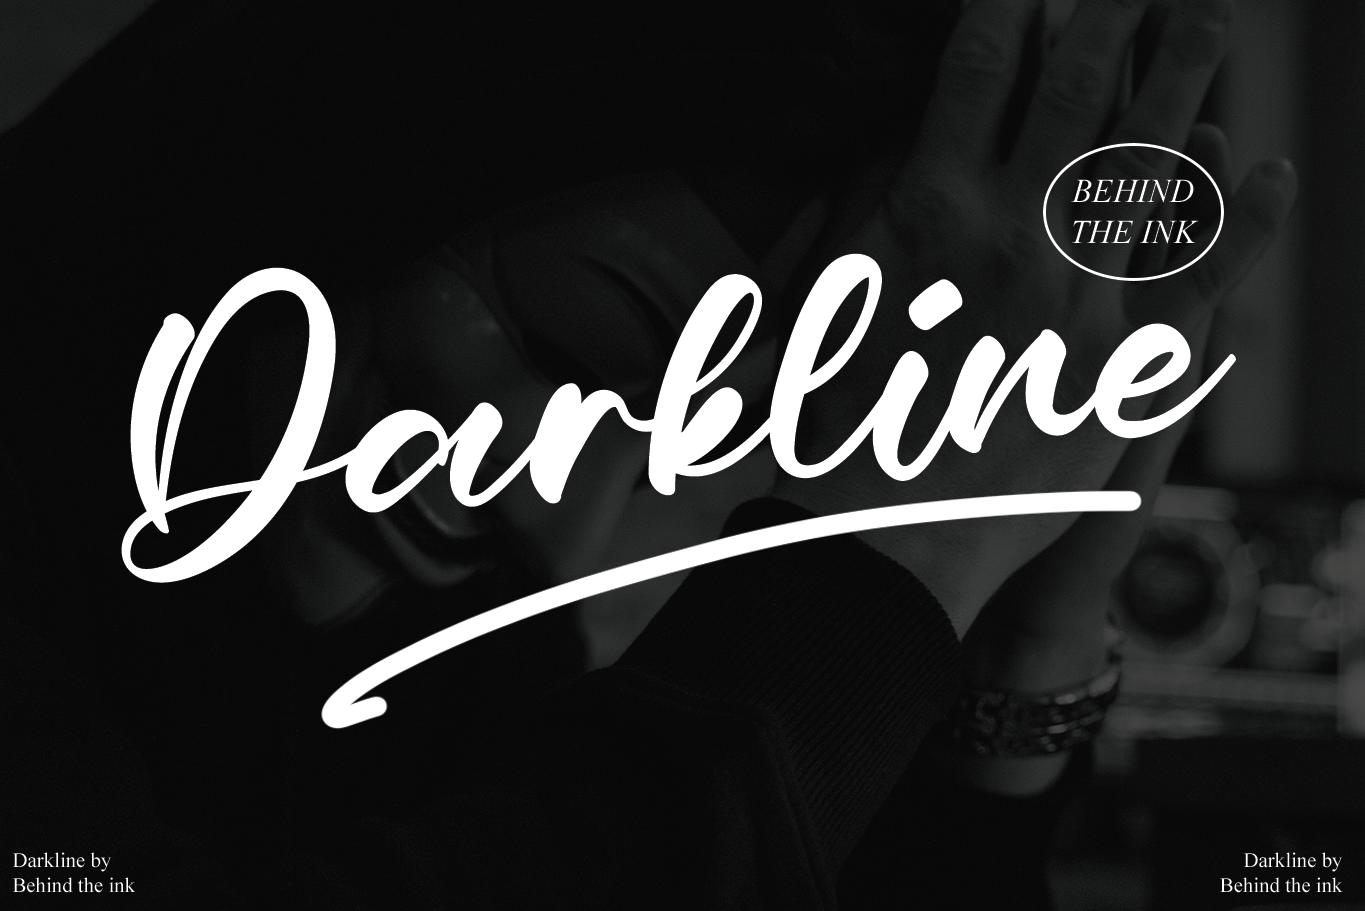 Darkline Font